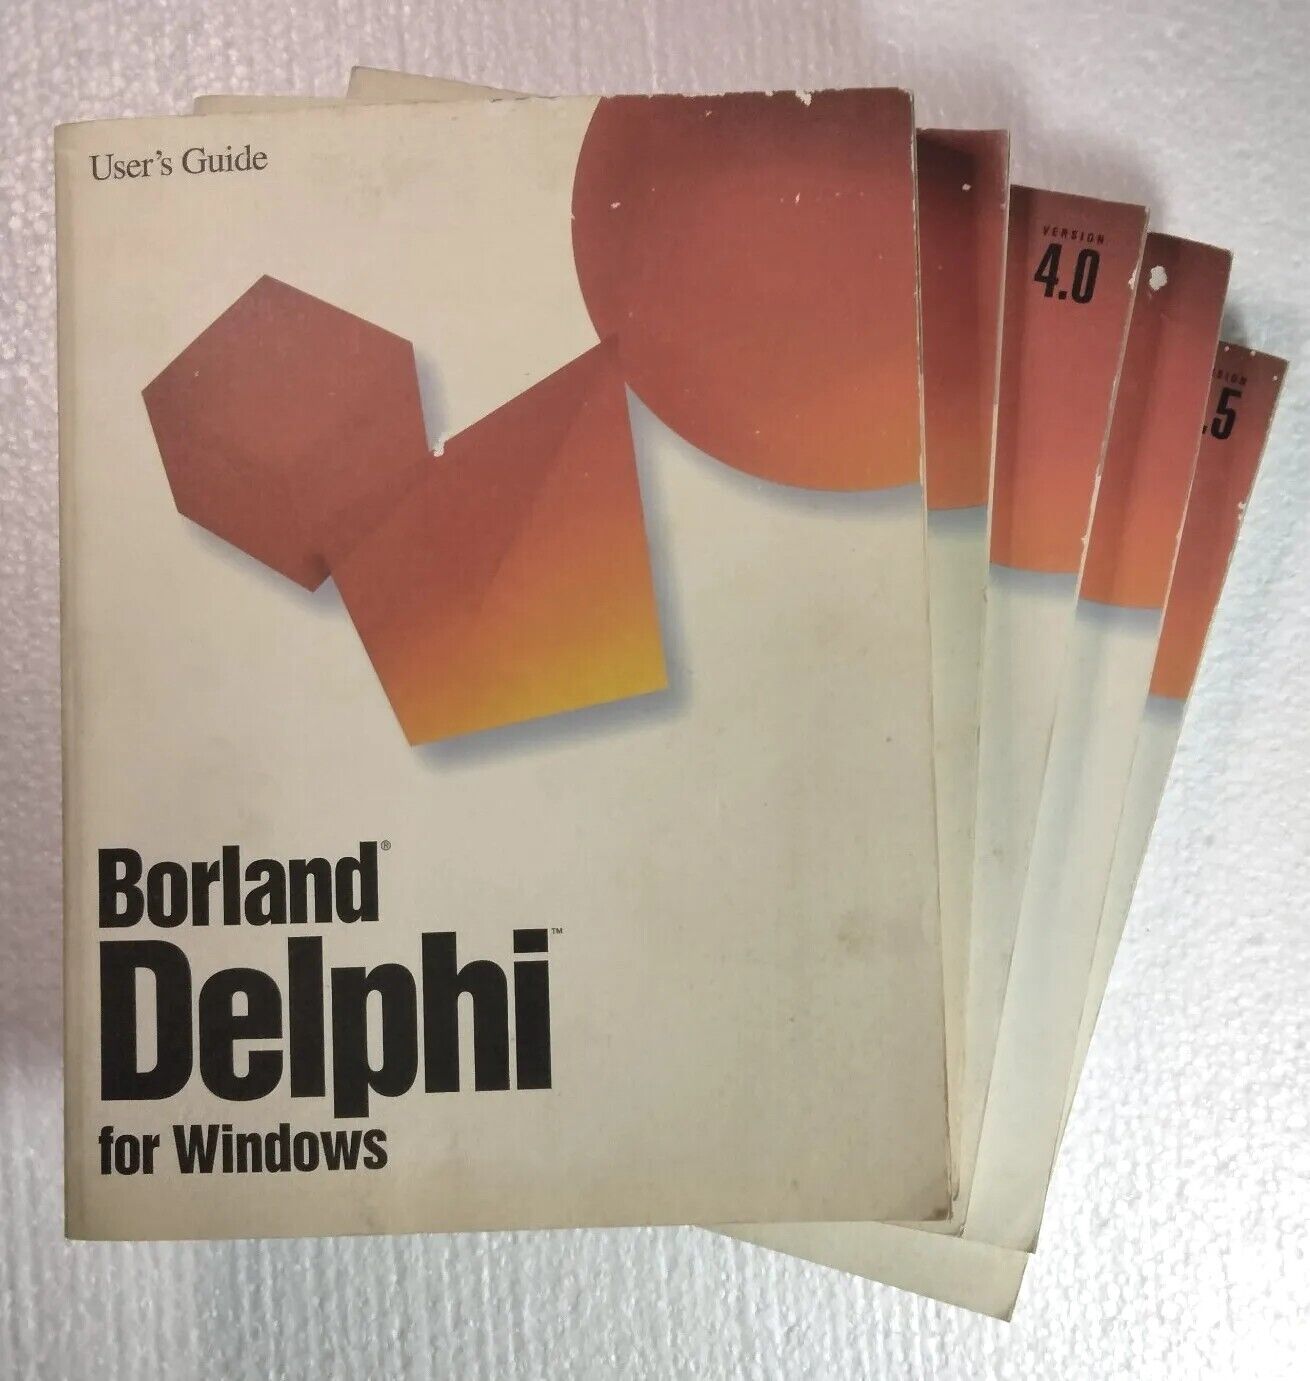 Borland Delphi 1.0 for Windows Manuals ReportSmith 2.5 Local InterBase Server 4.